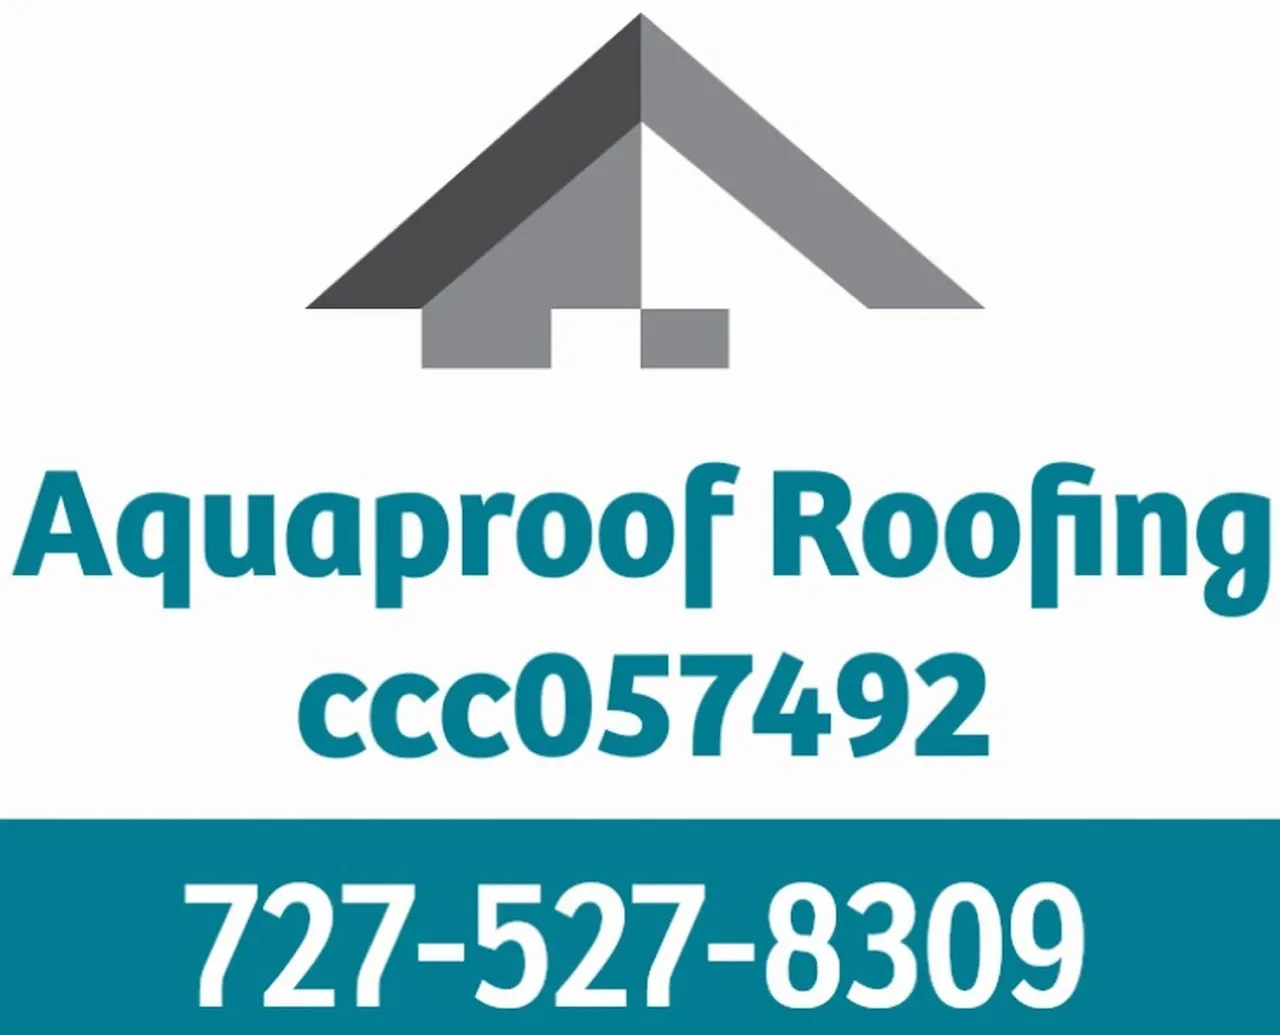 Aquaproof roofing logo.